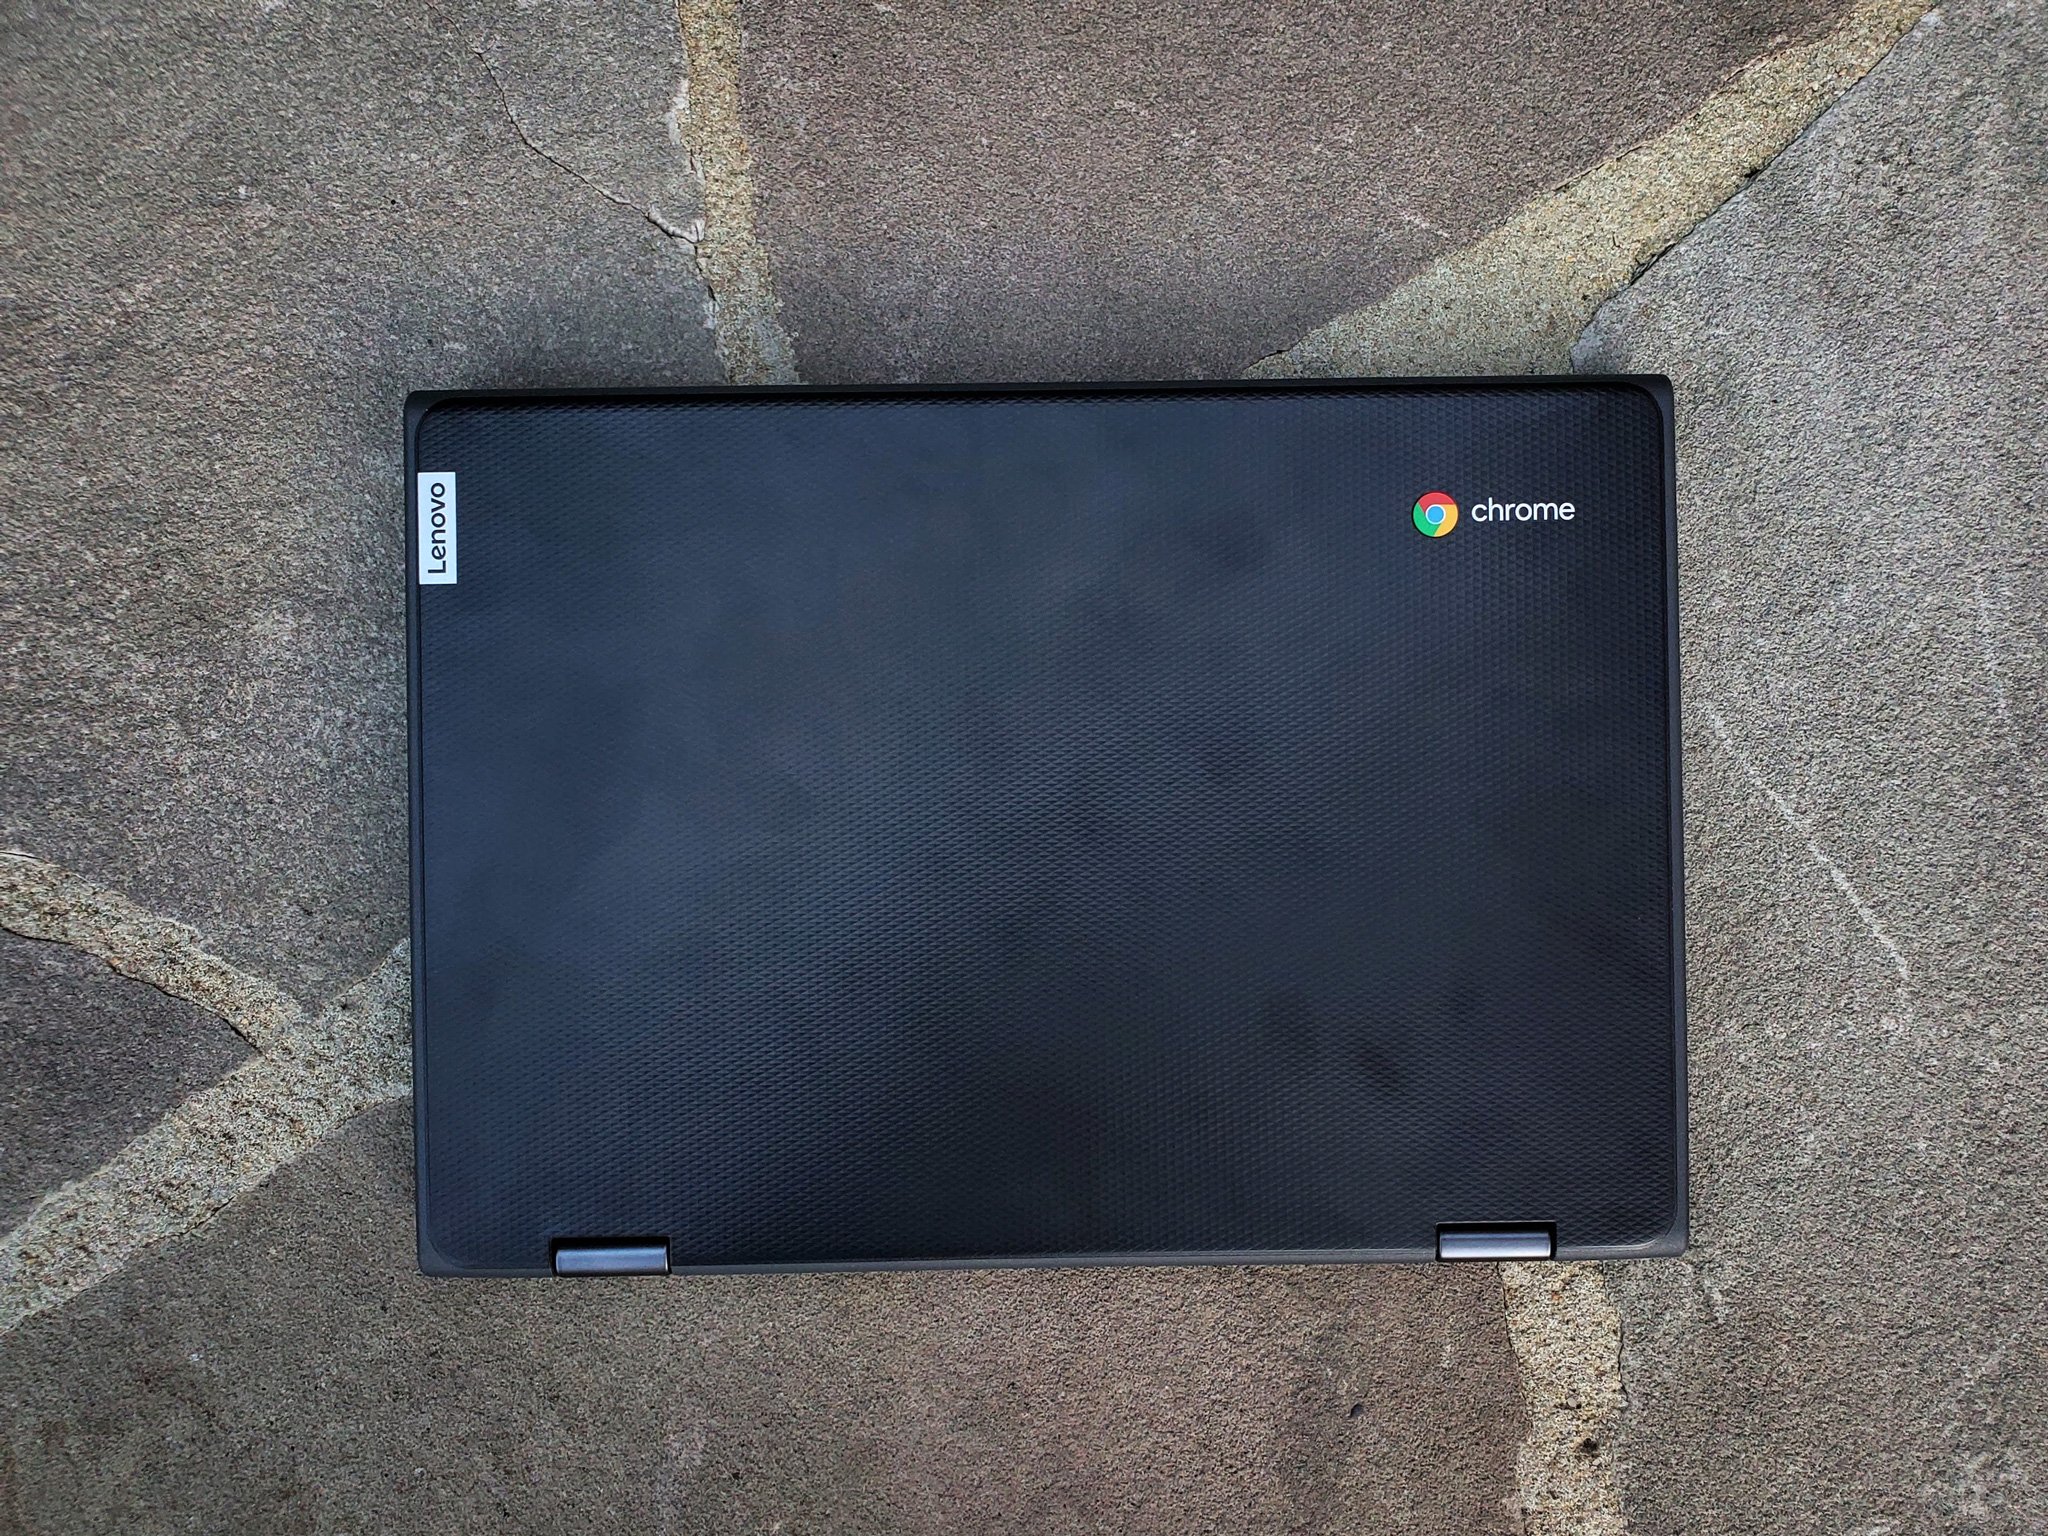 Lenovo 300e Chromebook 2nd Gen review: A school Chromebook you should